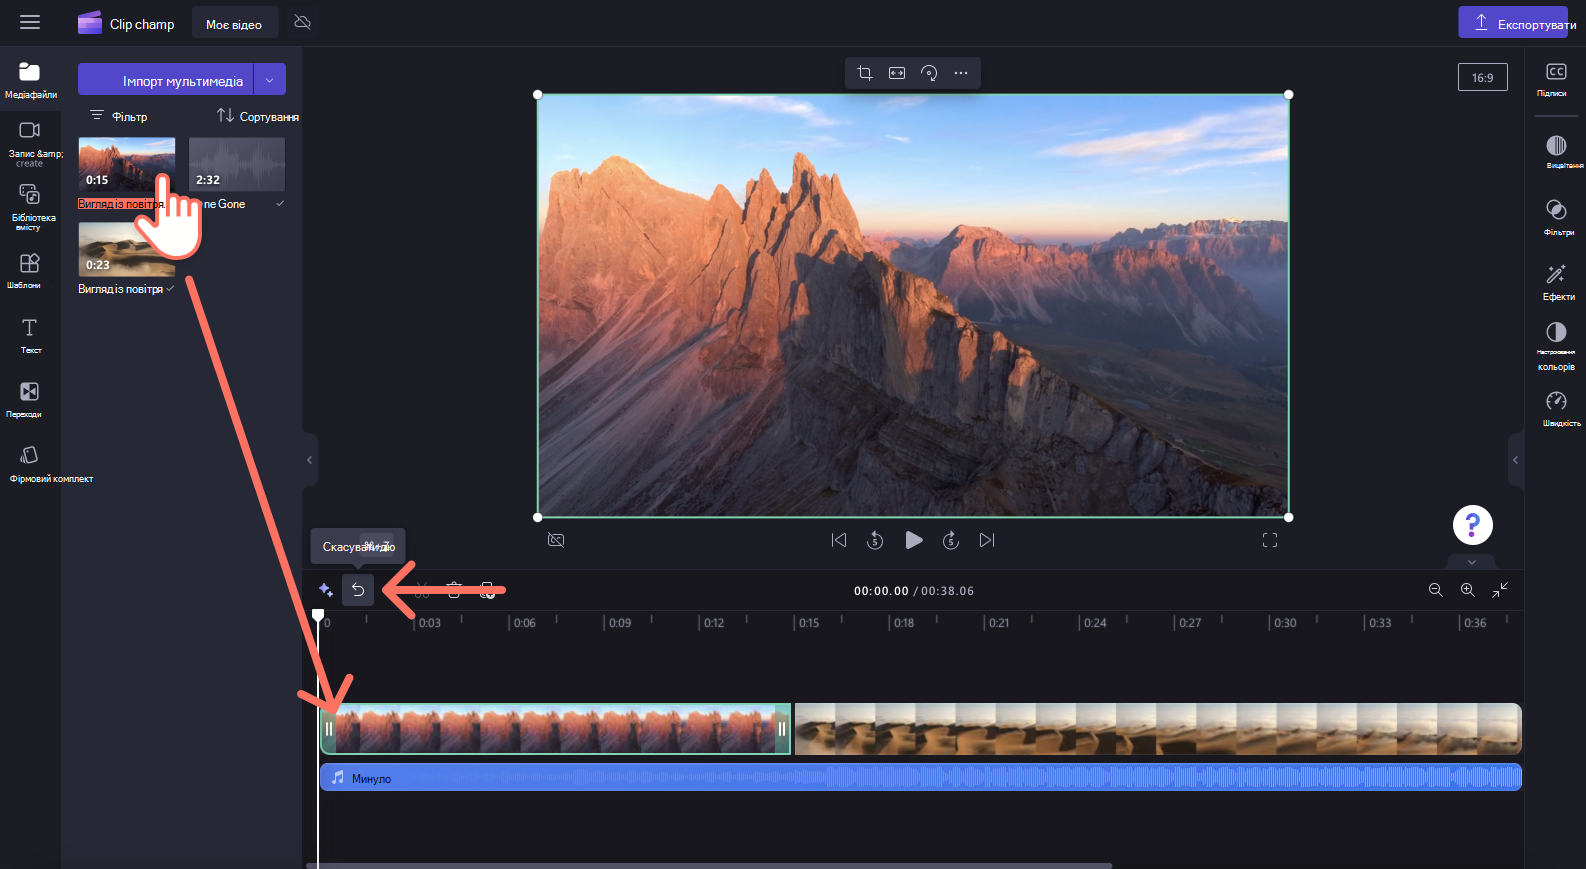 Зображення користувача, який повторно додає відео на часову шкалу.